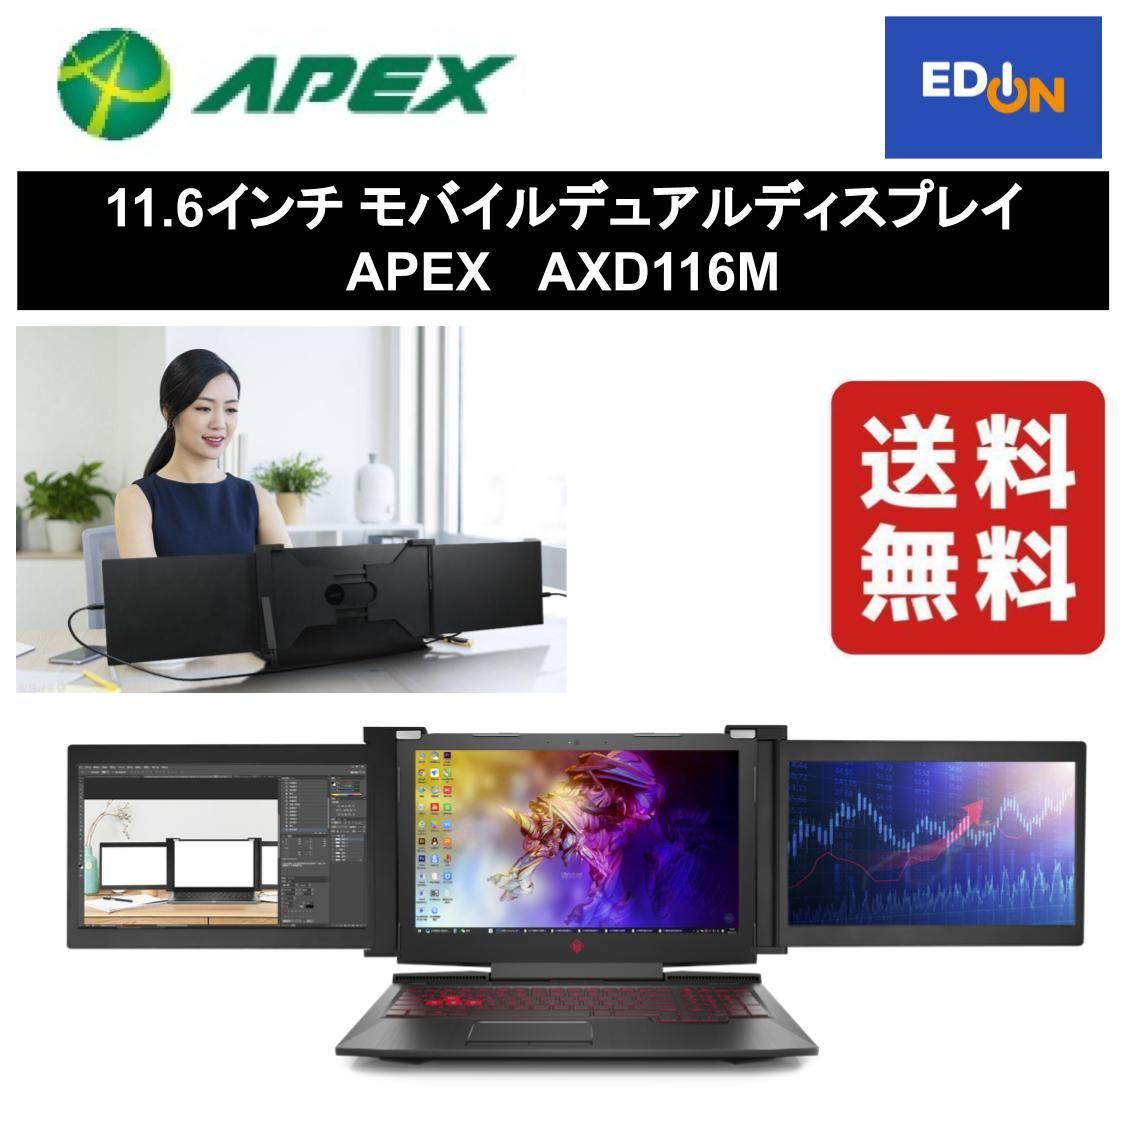 アペックス モバイルデュアルディスプレイ AXD116M 11.6インチ(297-ud